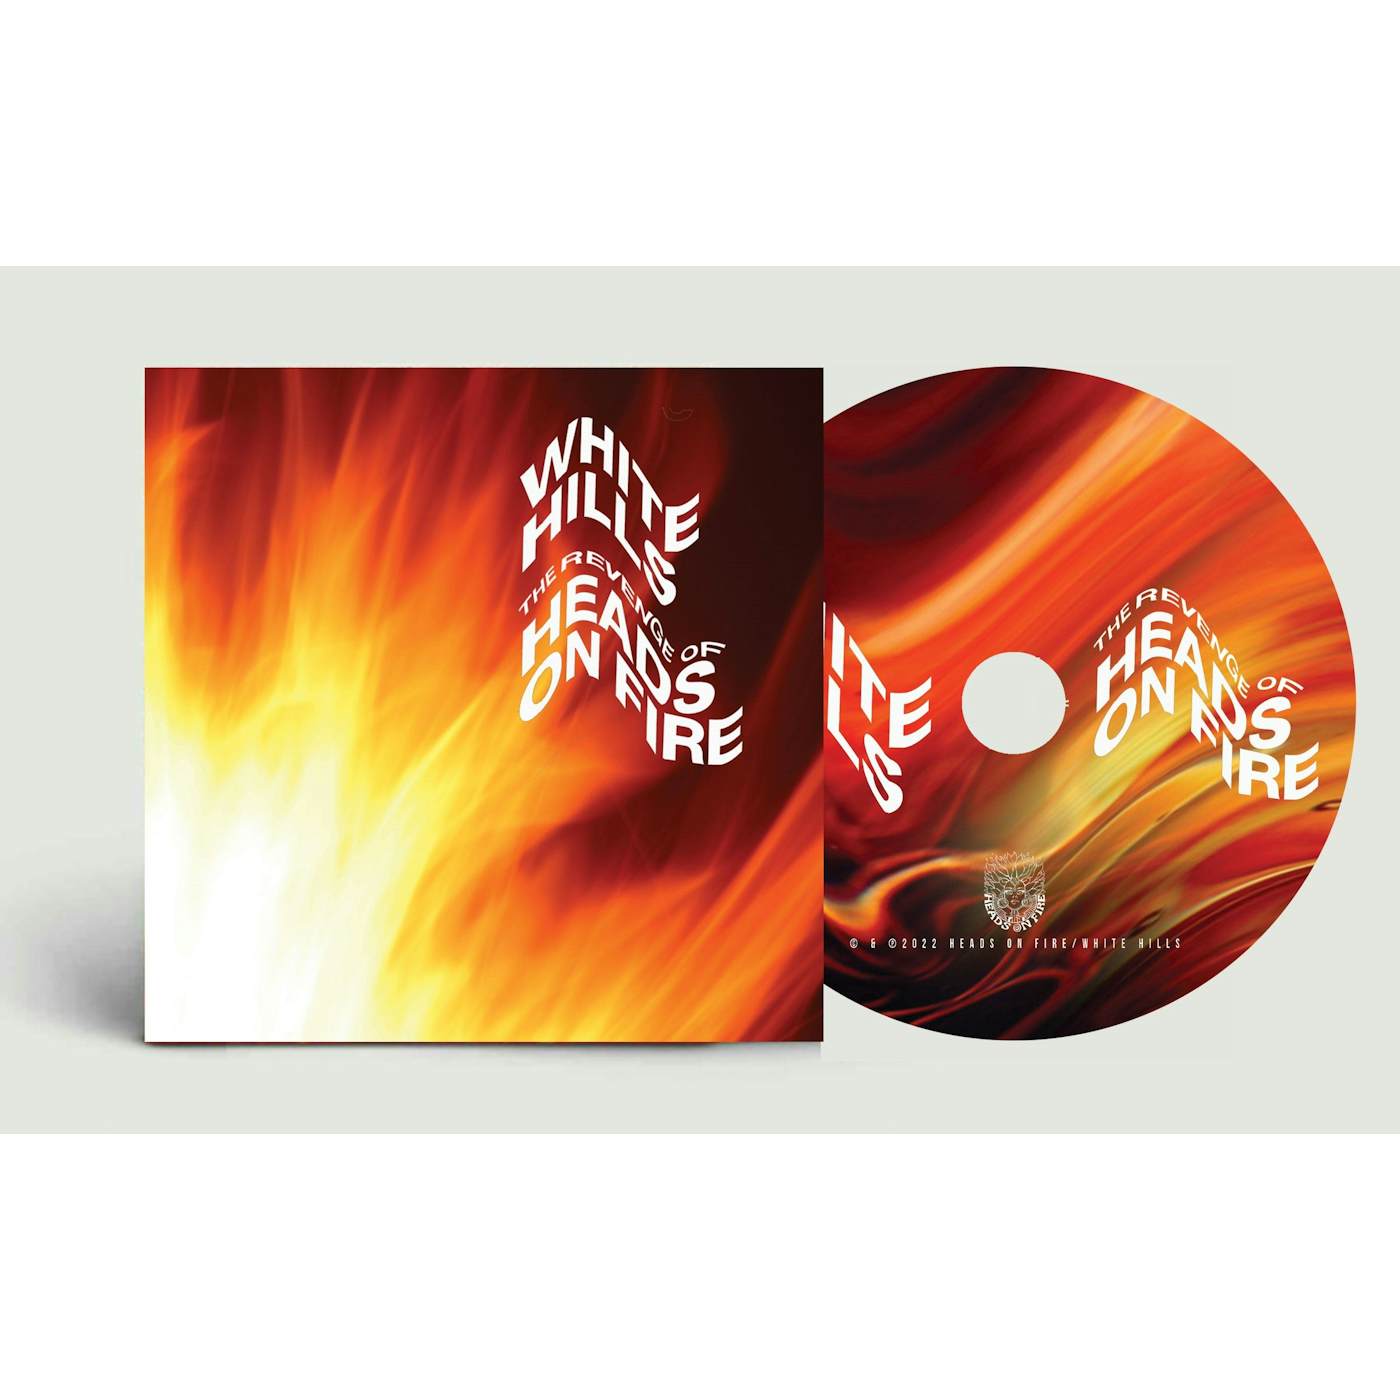 White Hills 'The Revenge Of Heads On Fire' Vinyl Record